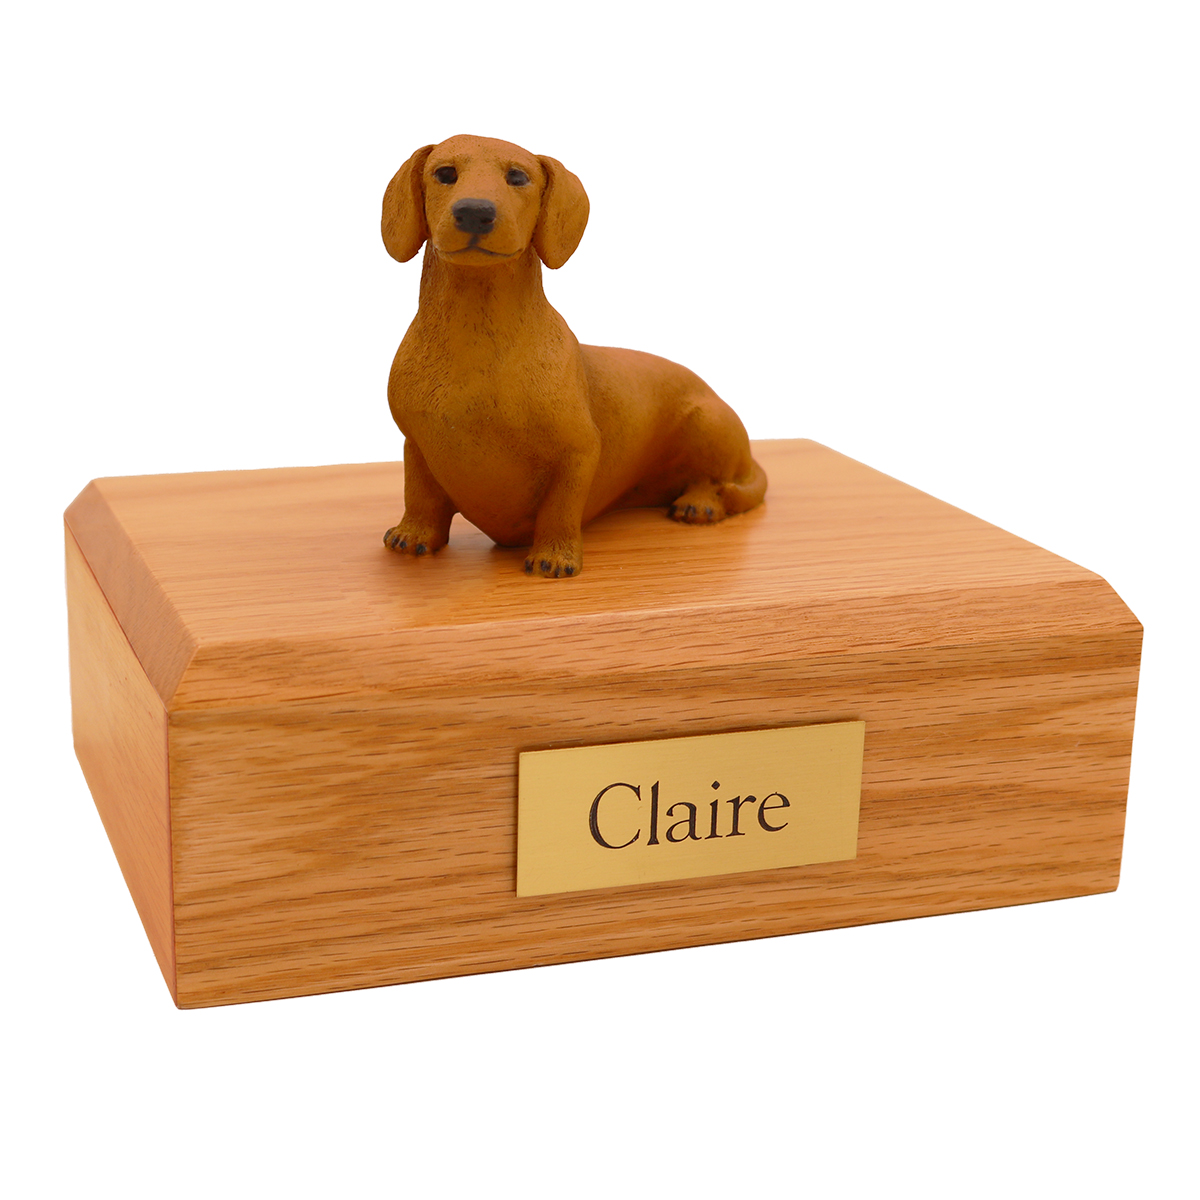 Dog, Dachshund, Red/Brown - Figurine Urn